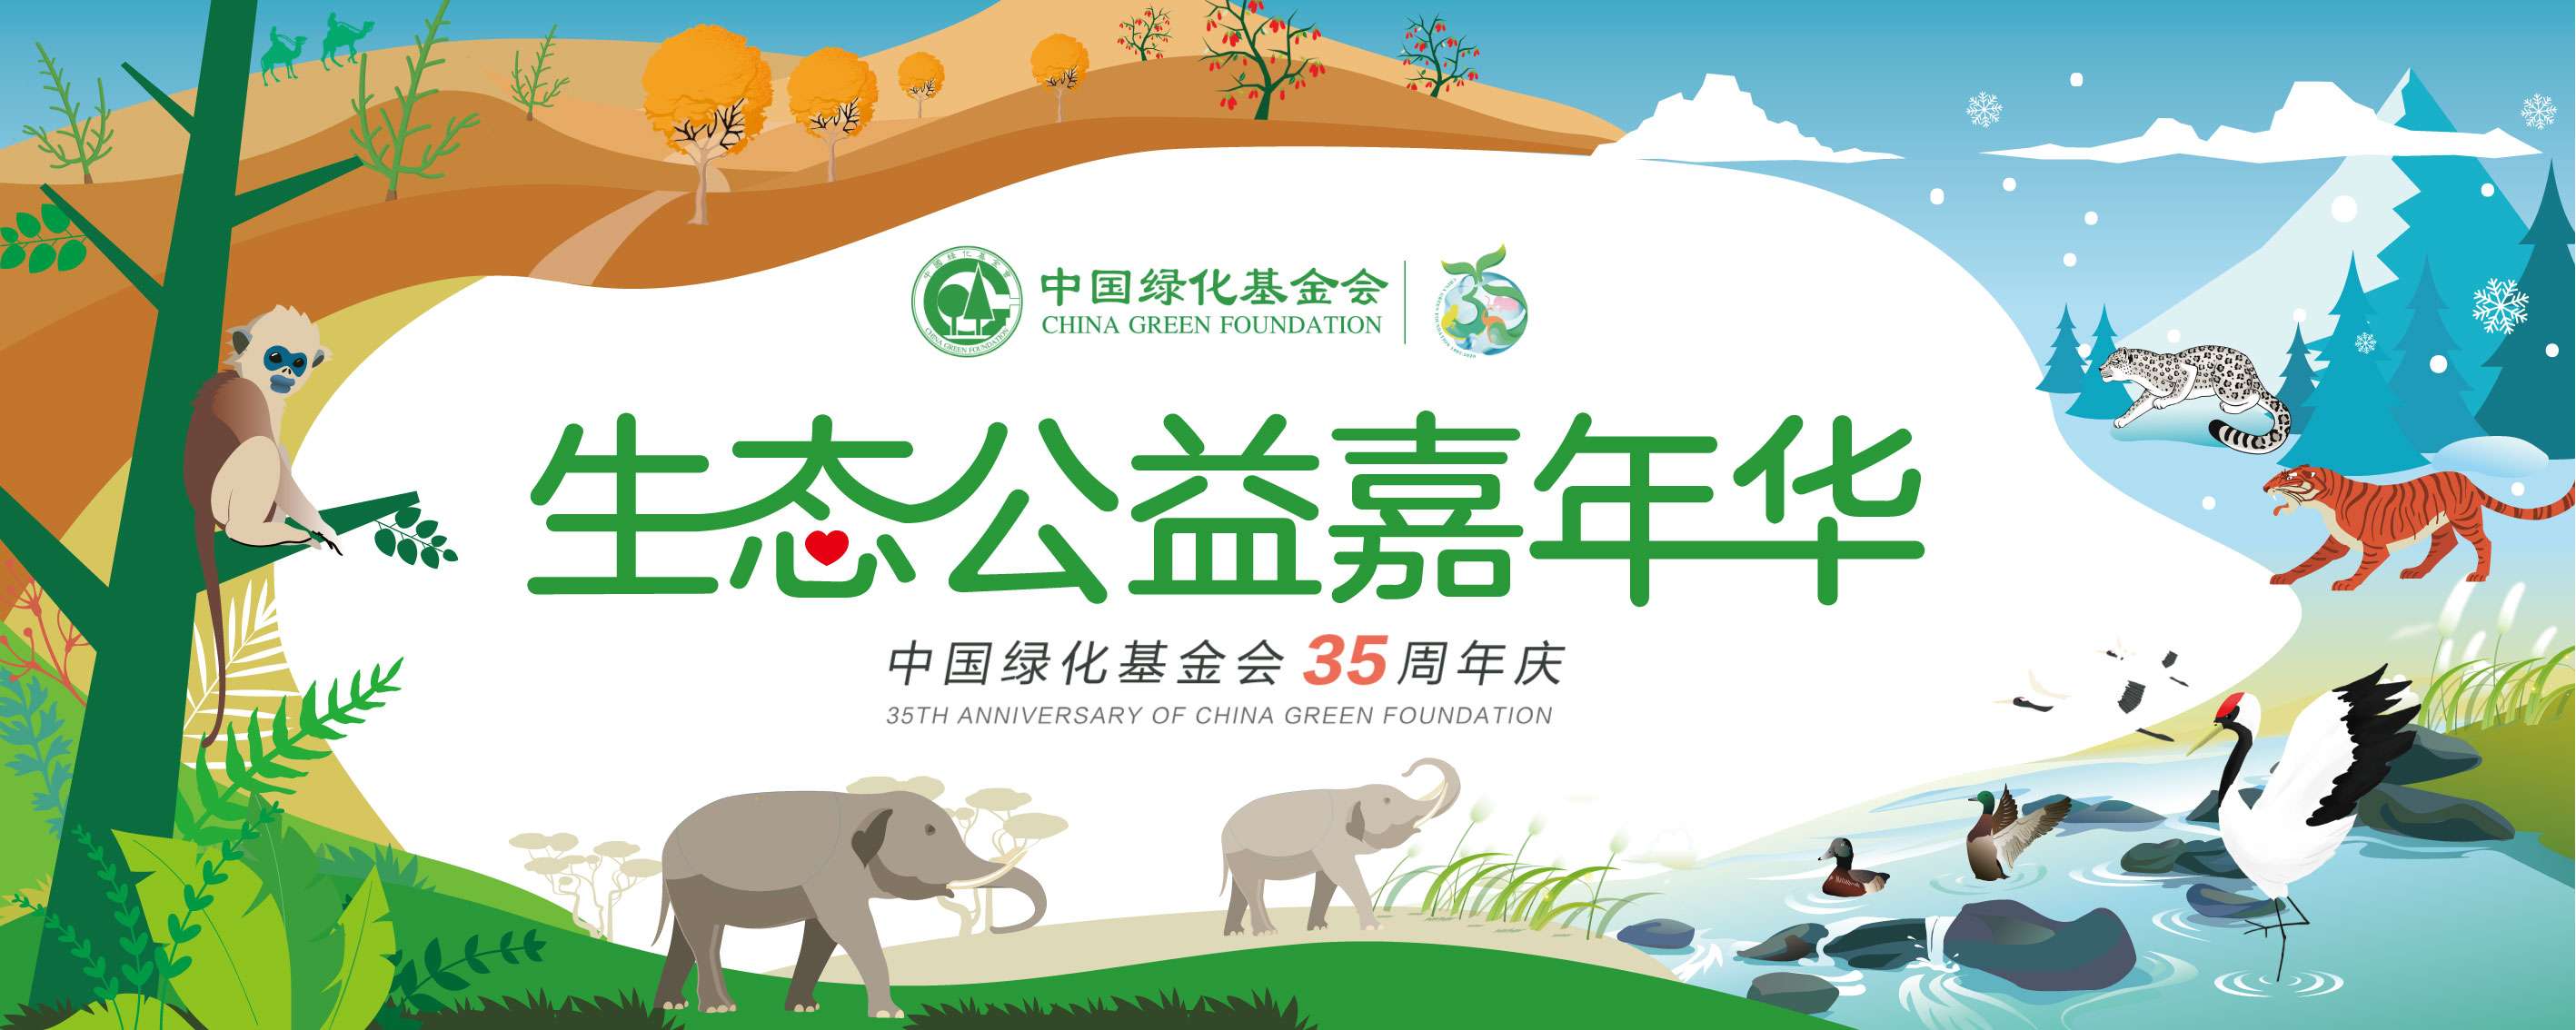 中国绿化基金会35周年国际组织祝福